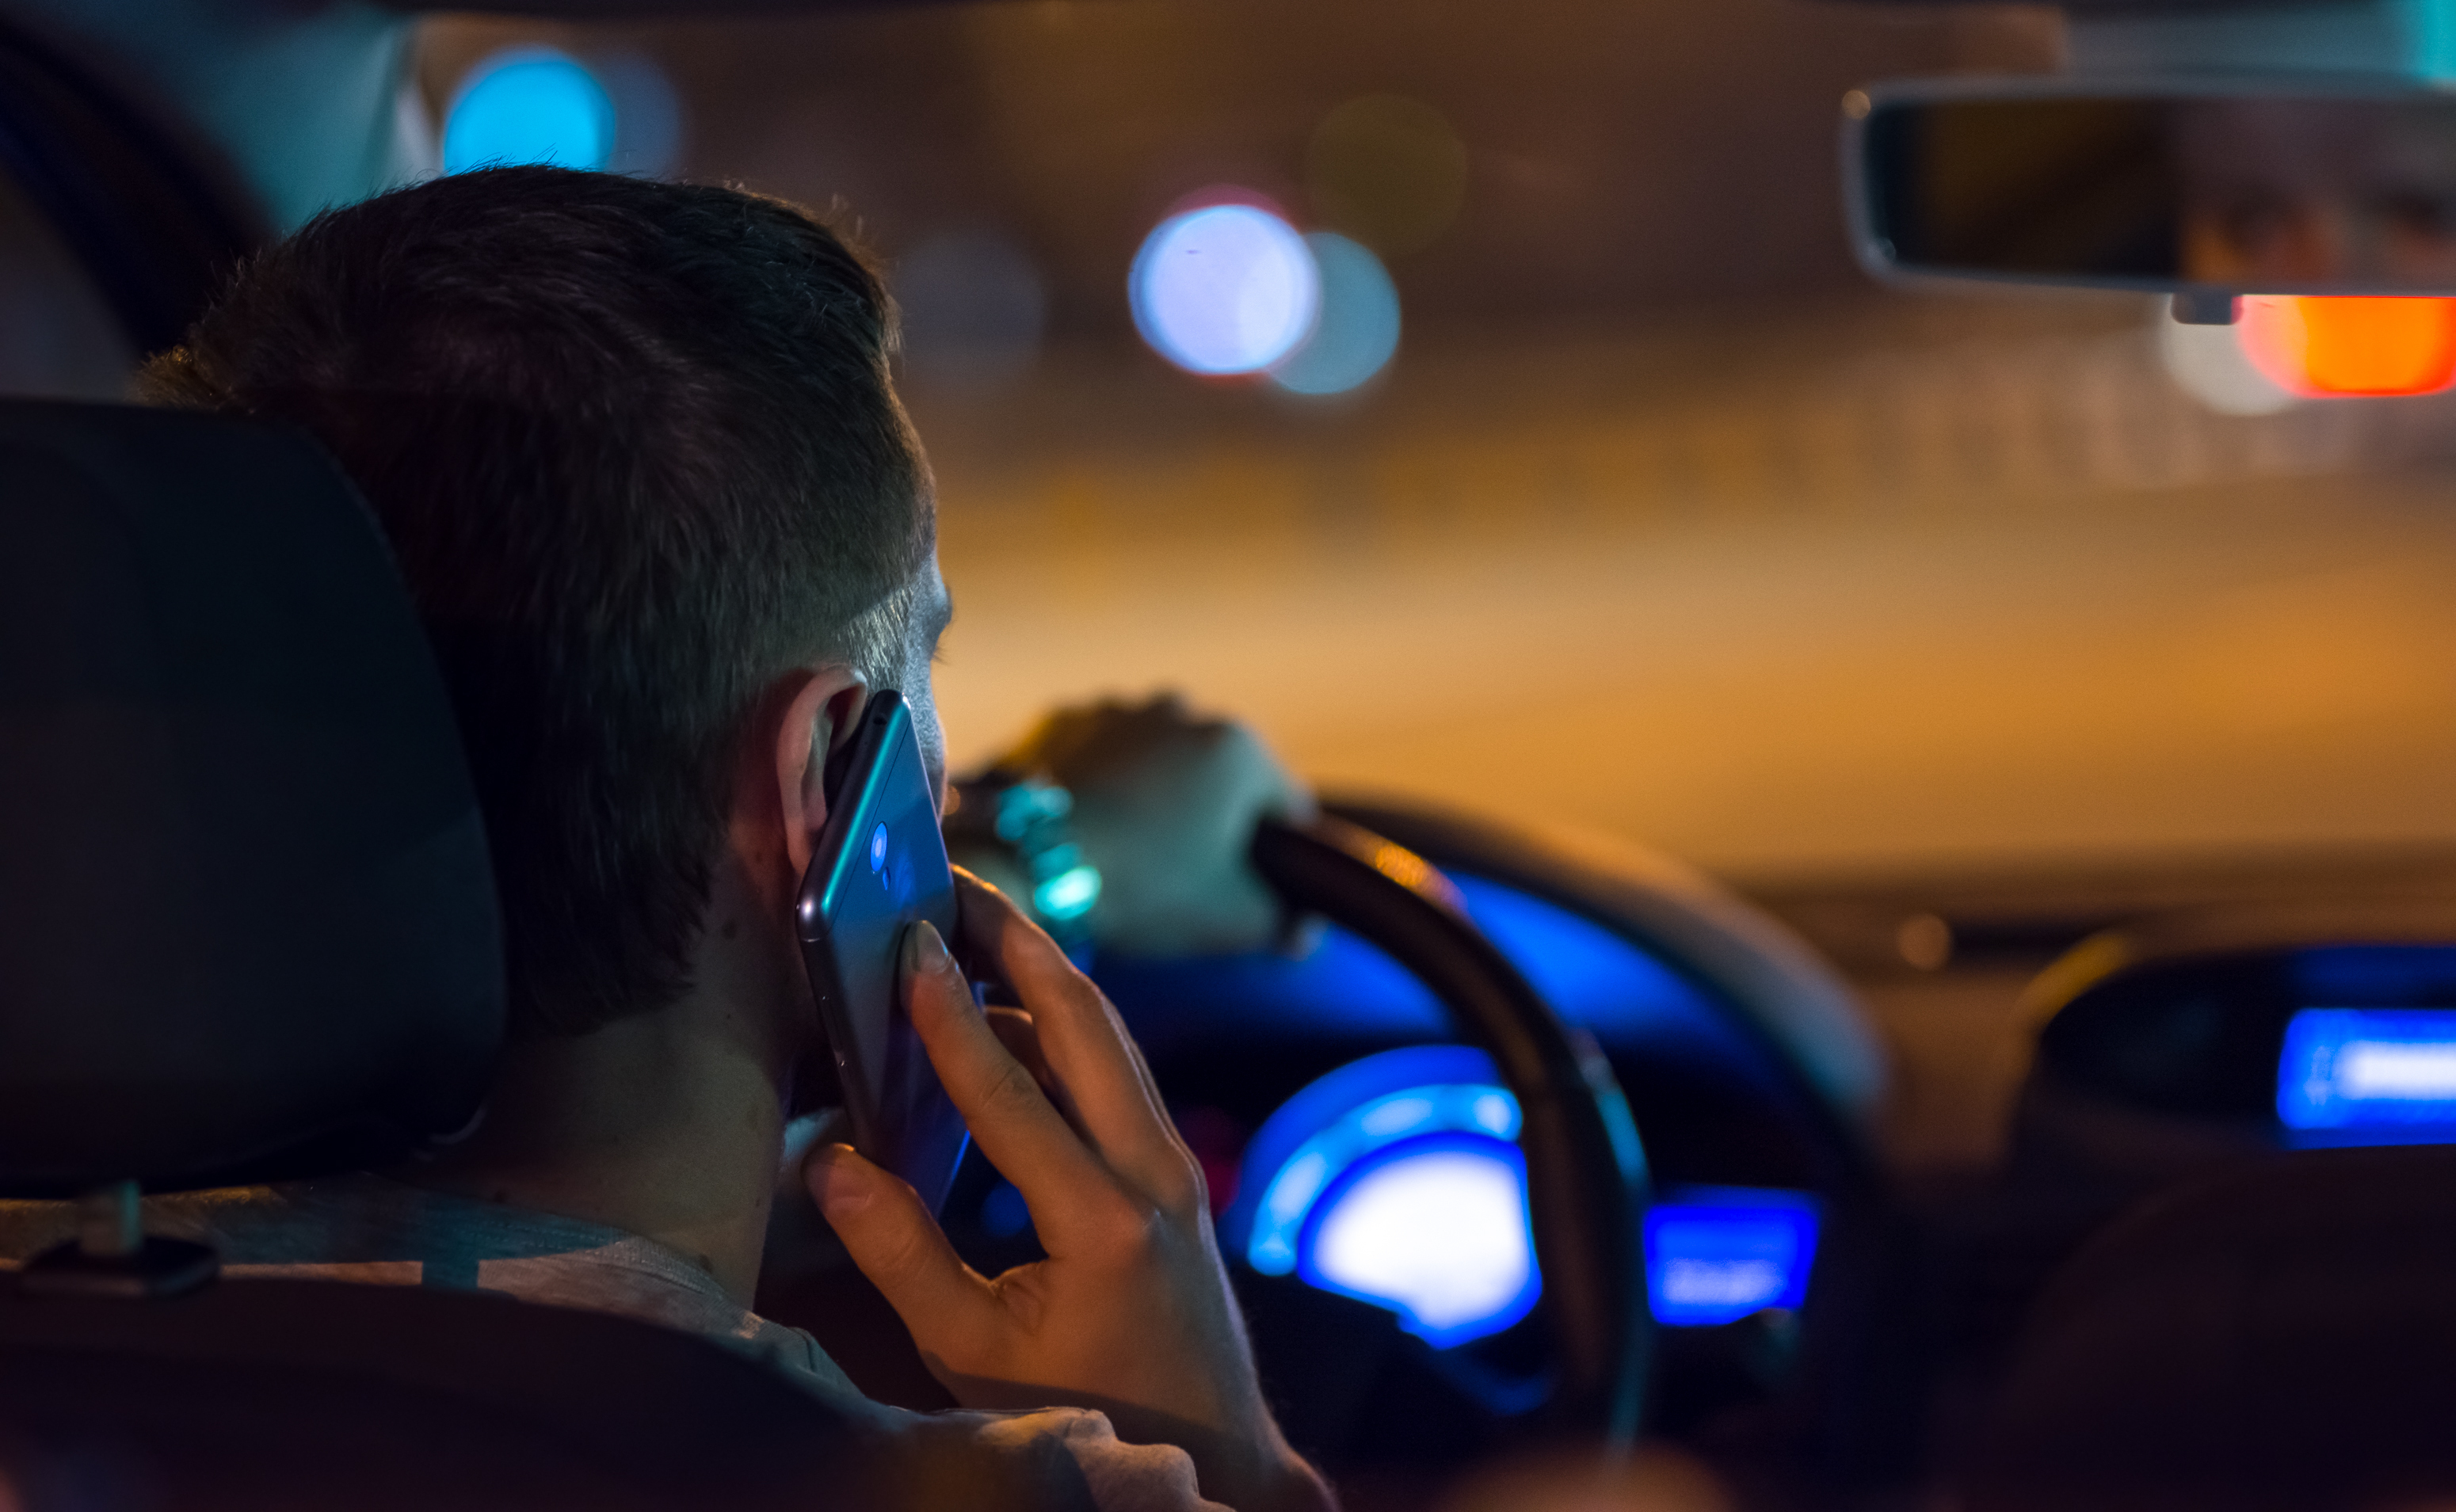 El hombre conduce un Automóvil por la ciudad y llama por teléfono. | Fuente: Shutterstock